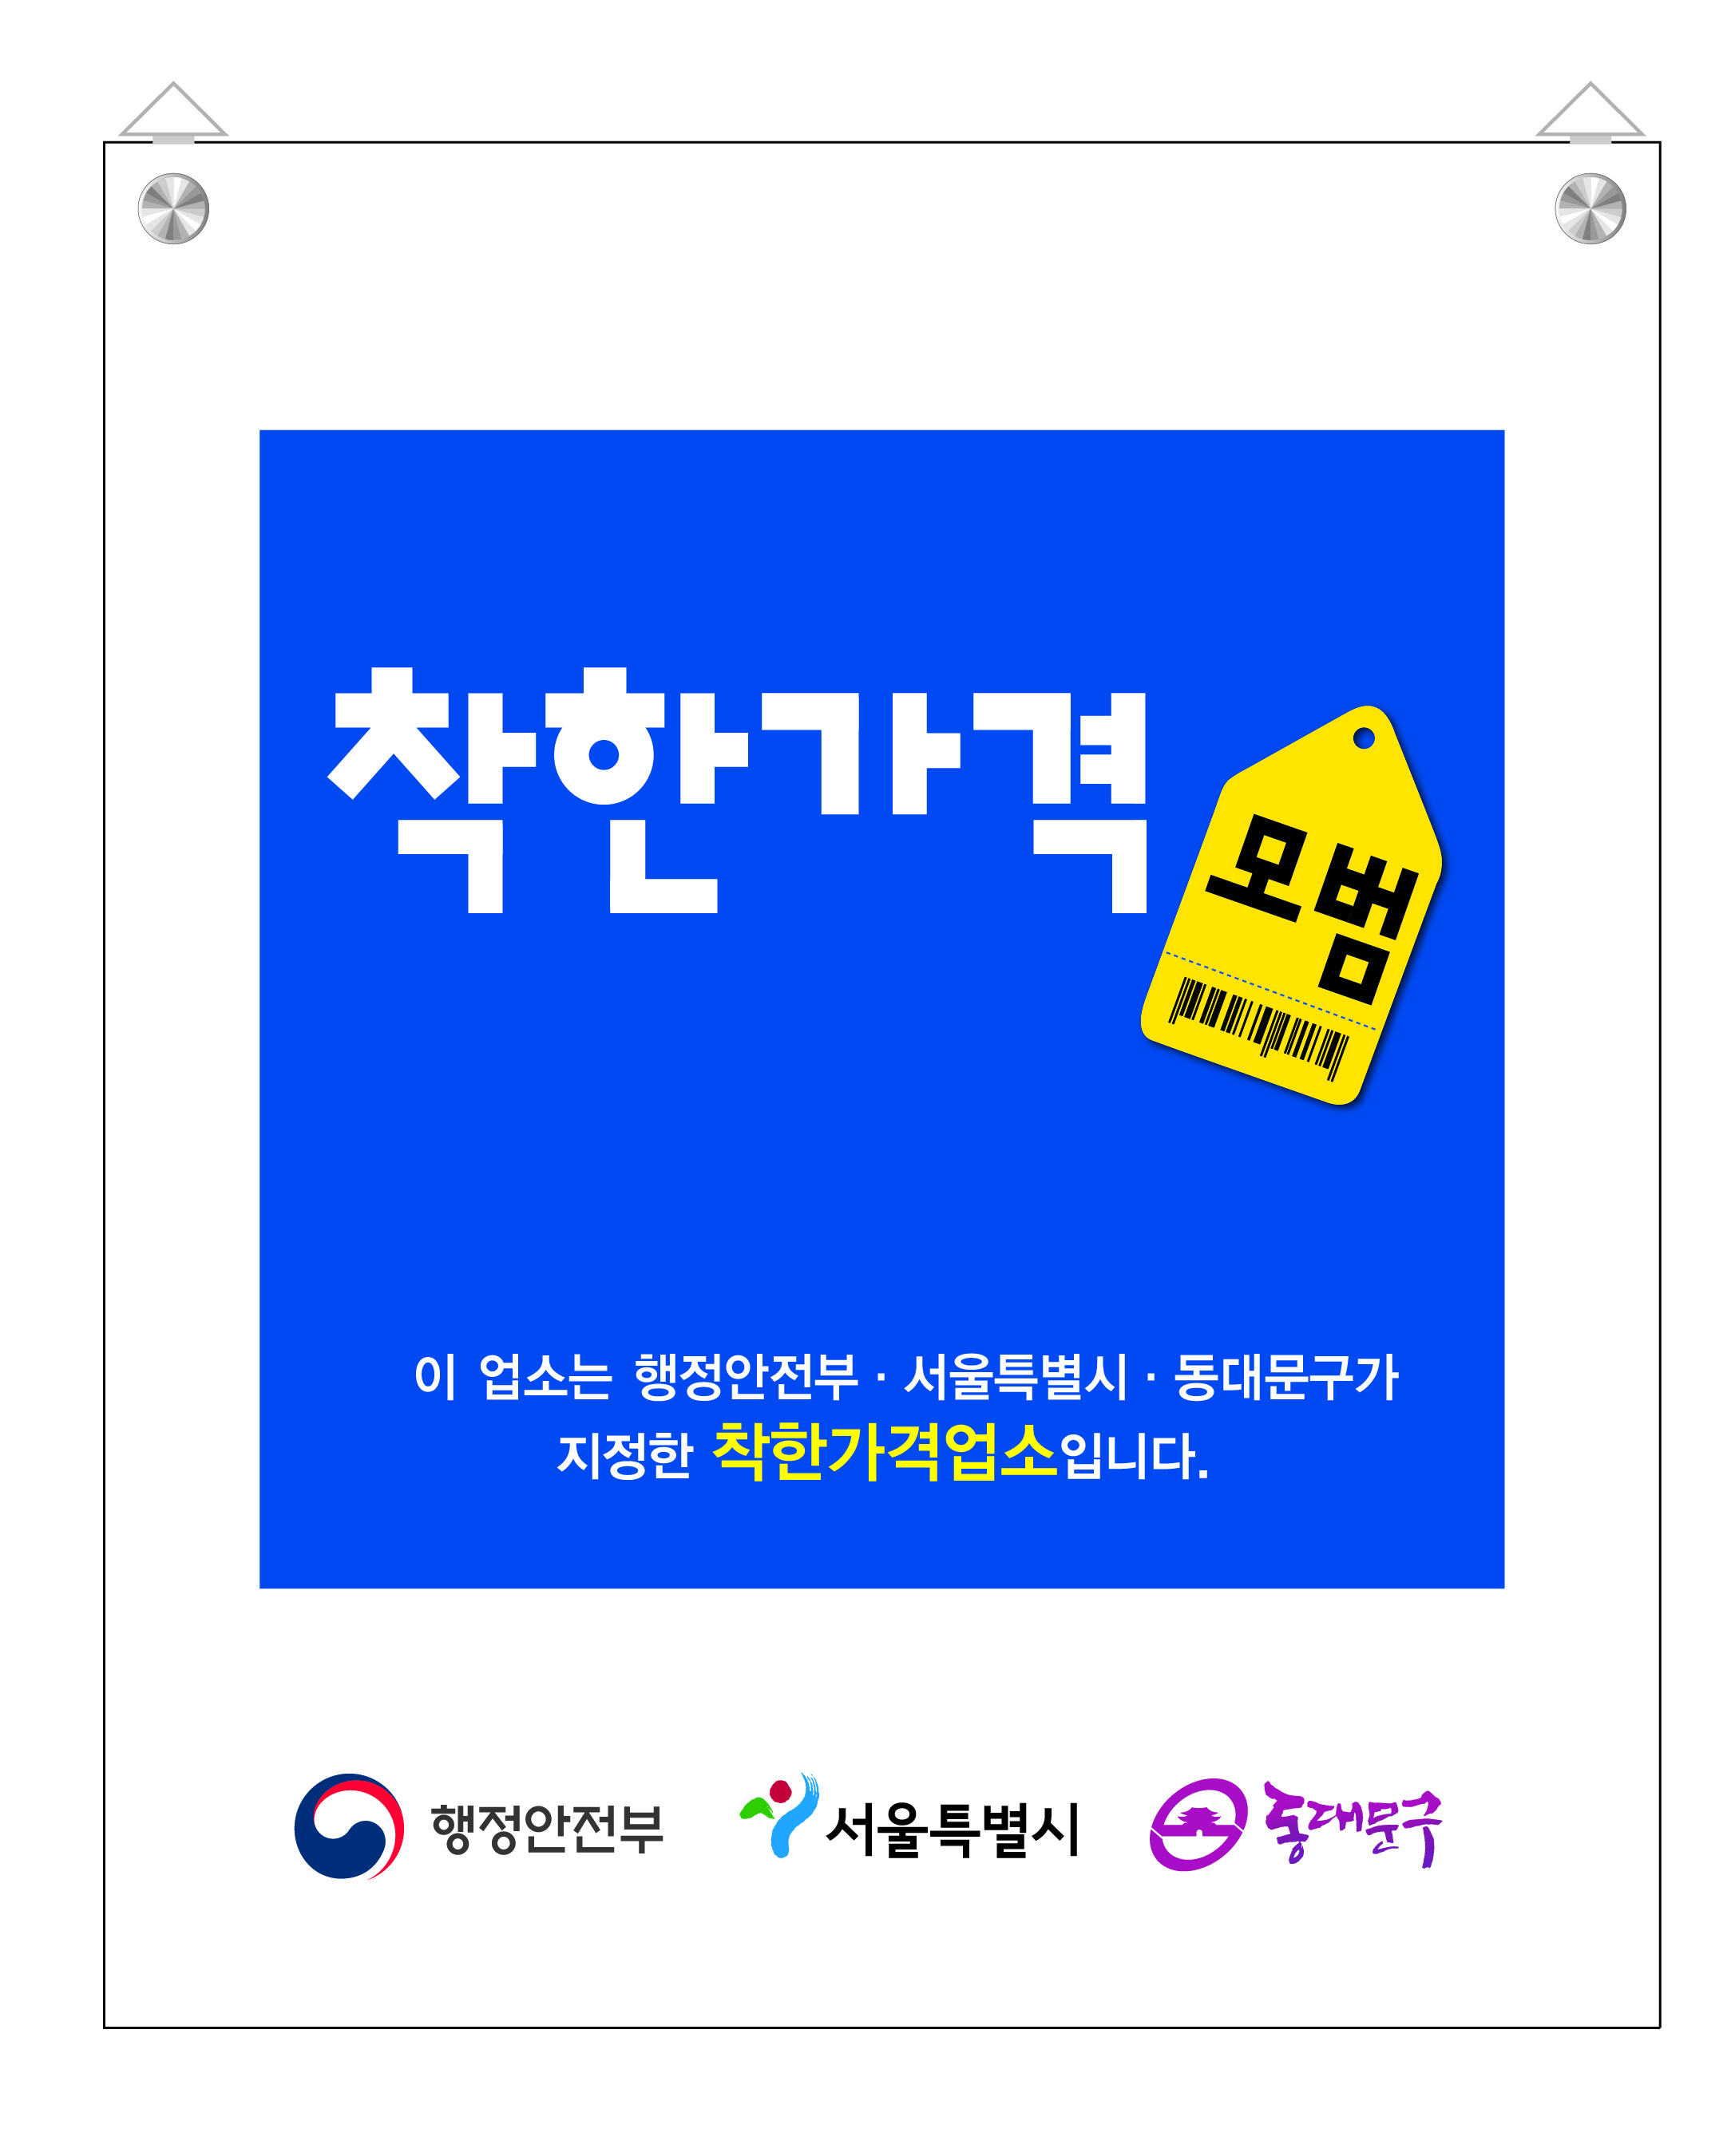 서울페이+, 신한카드 연계 착한가격업소 행사 안내 이미지 5 - 본문에 자세한설명을 제공합니다.